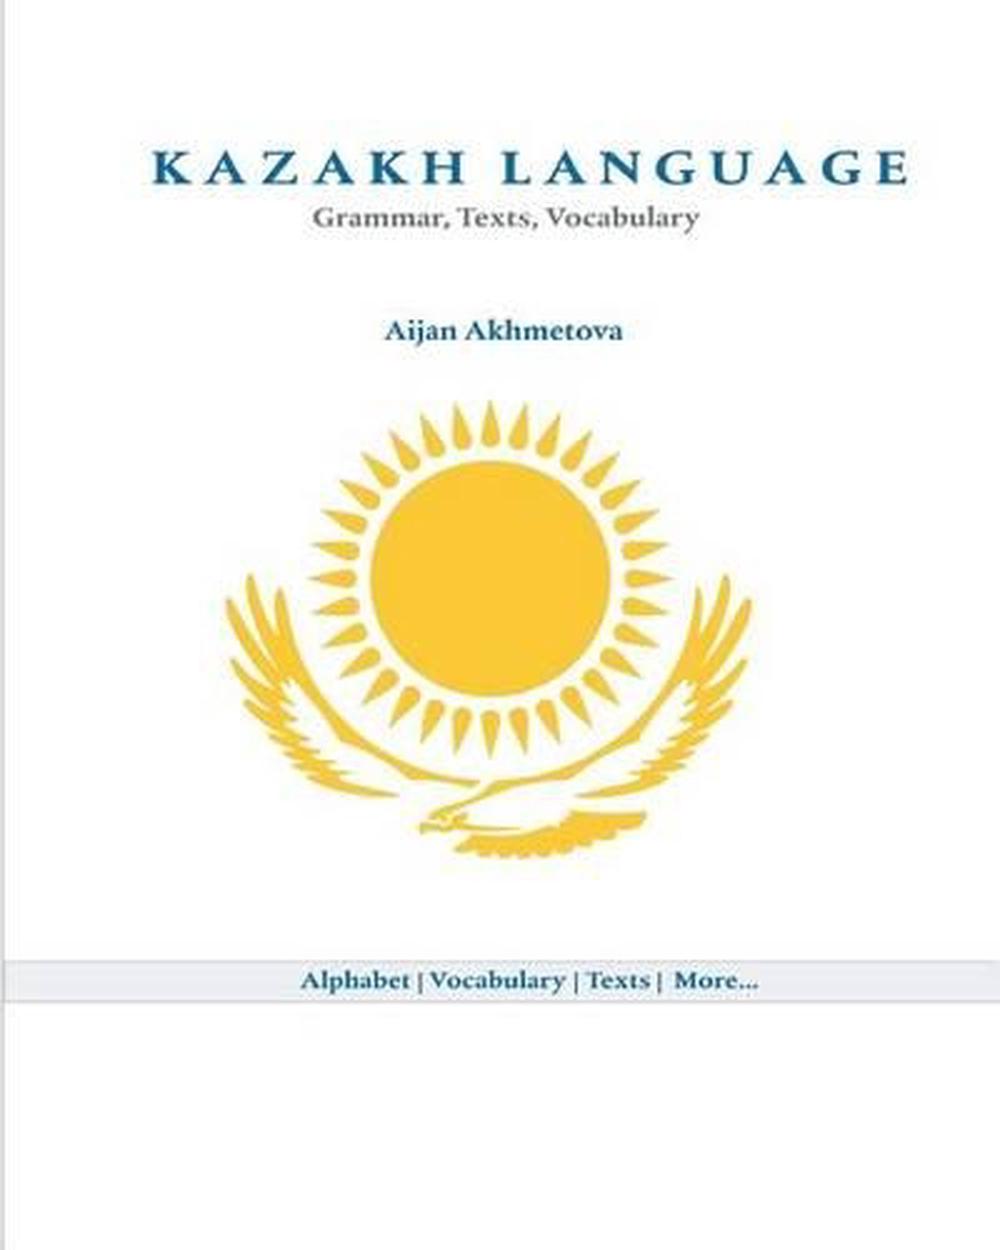 kazakh language essay